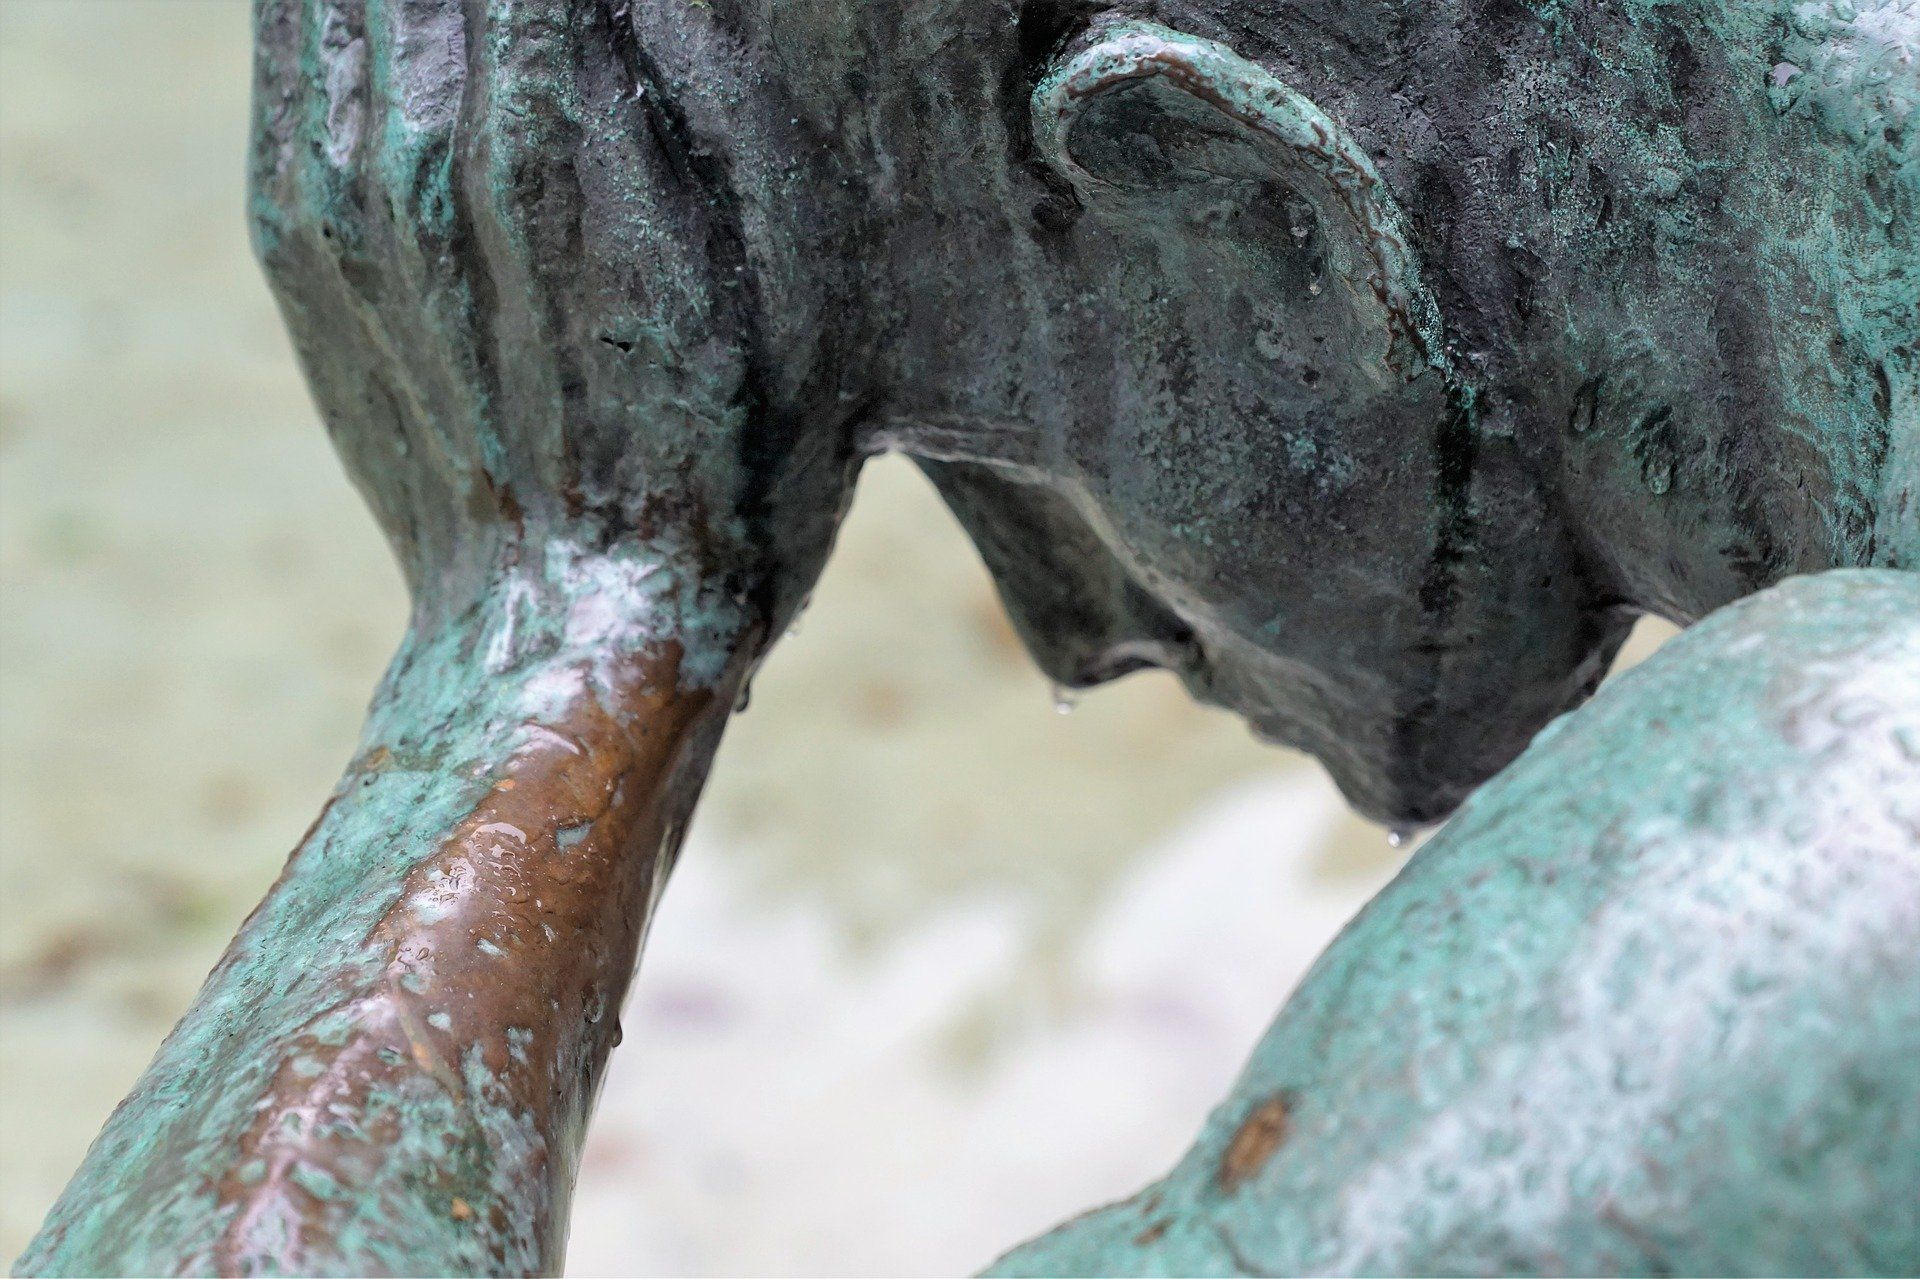 statue en bronze d'un homme pensif avec des goutes de pluie - Image par photosforyou de Pixabay